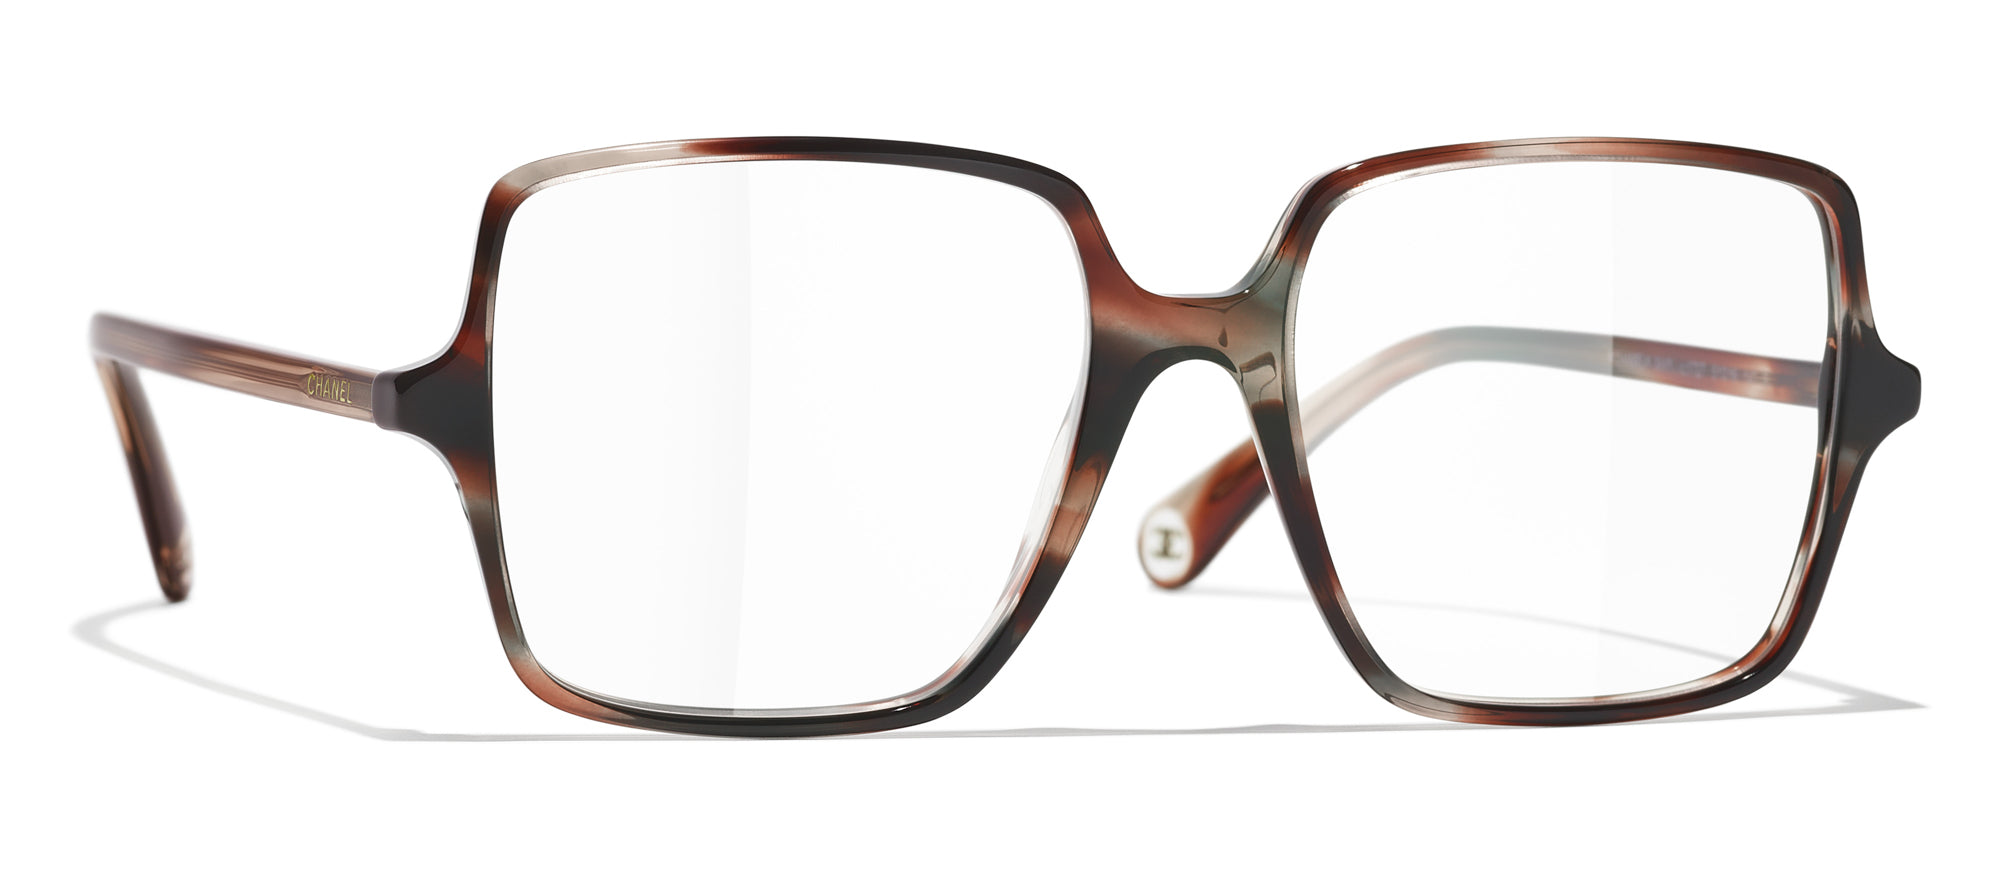 CHANEL 3448 Square Glasses